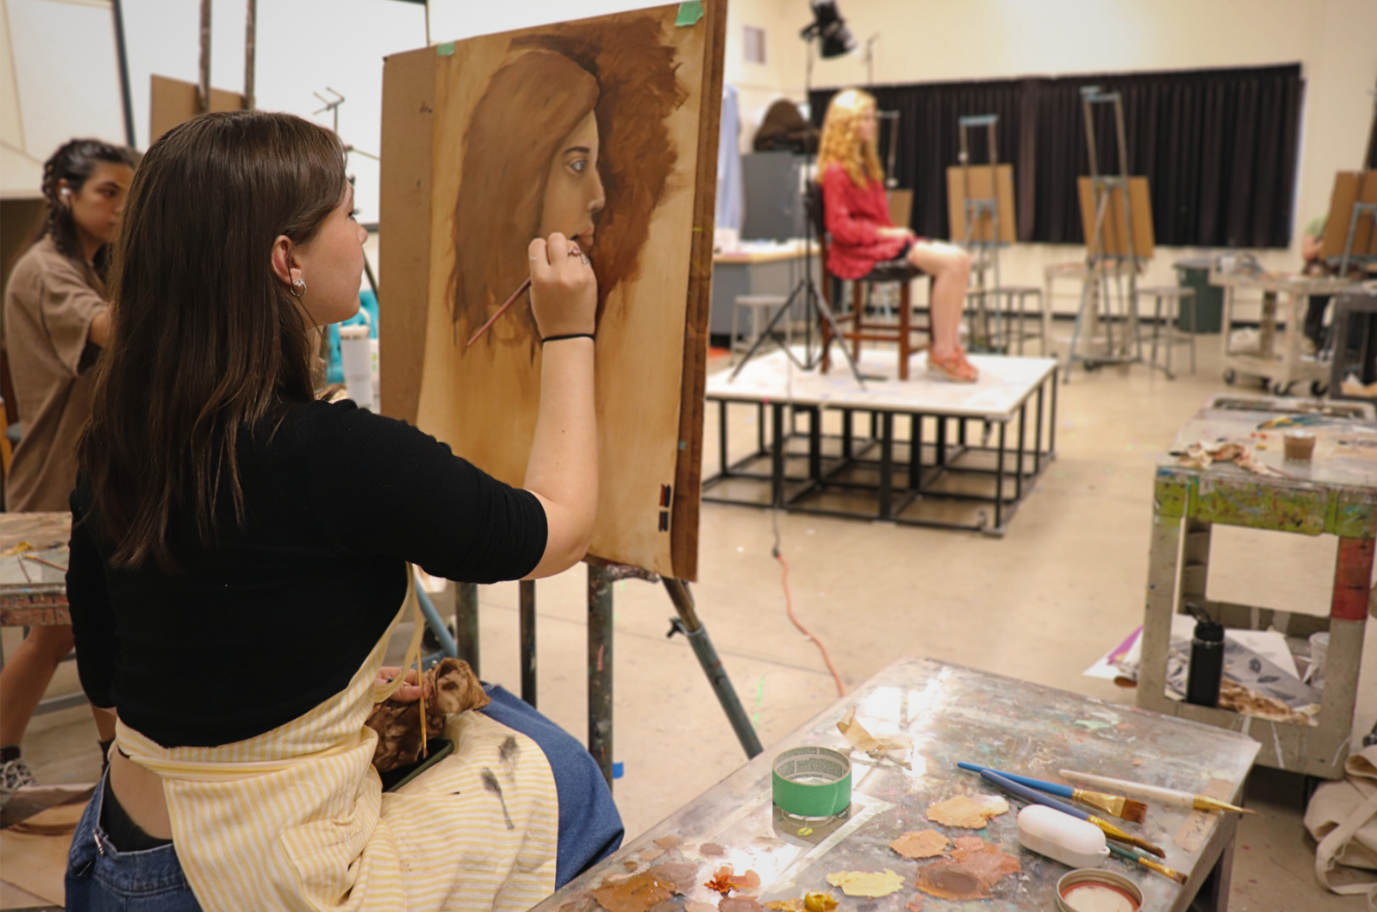 A student paints the portrait of a model